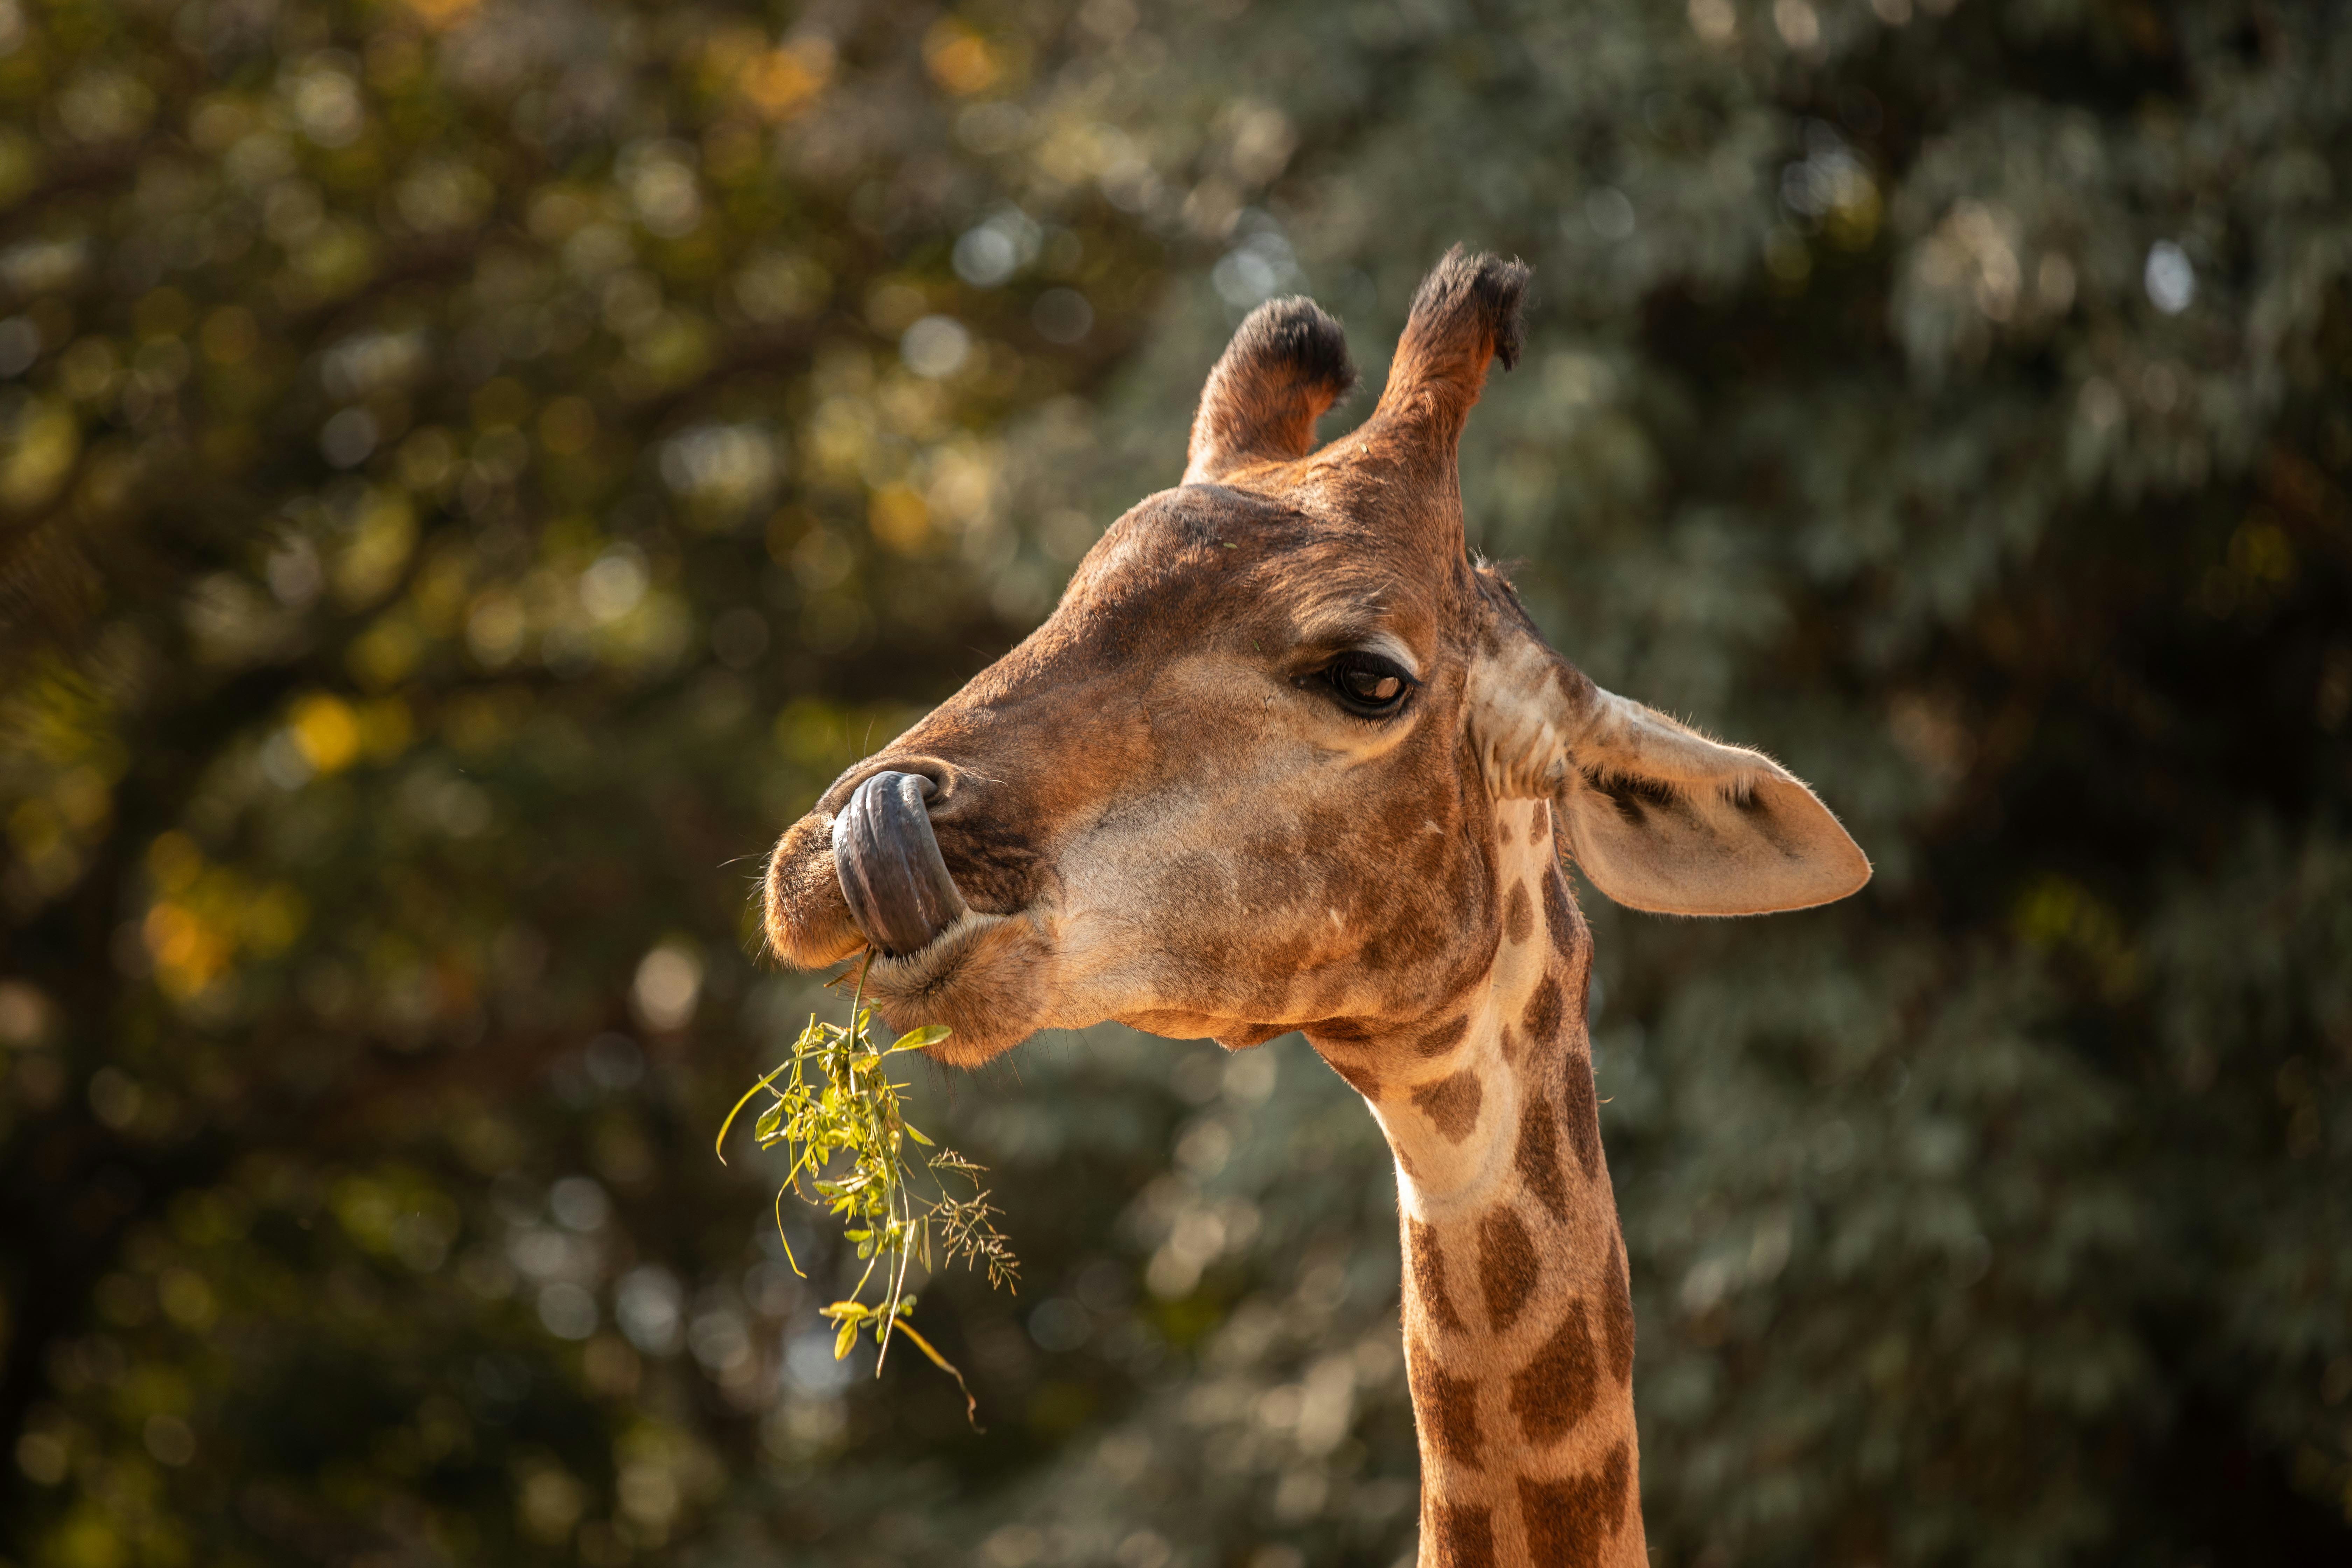 giraffe eating green leaves during daytime